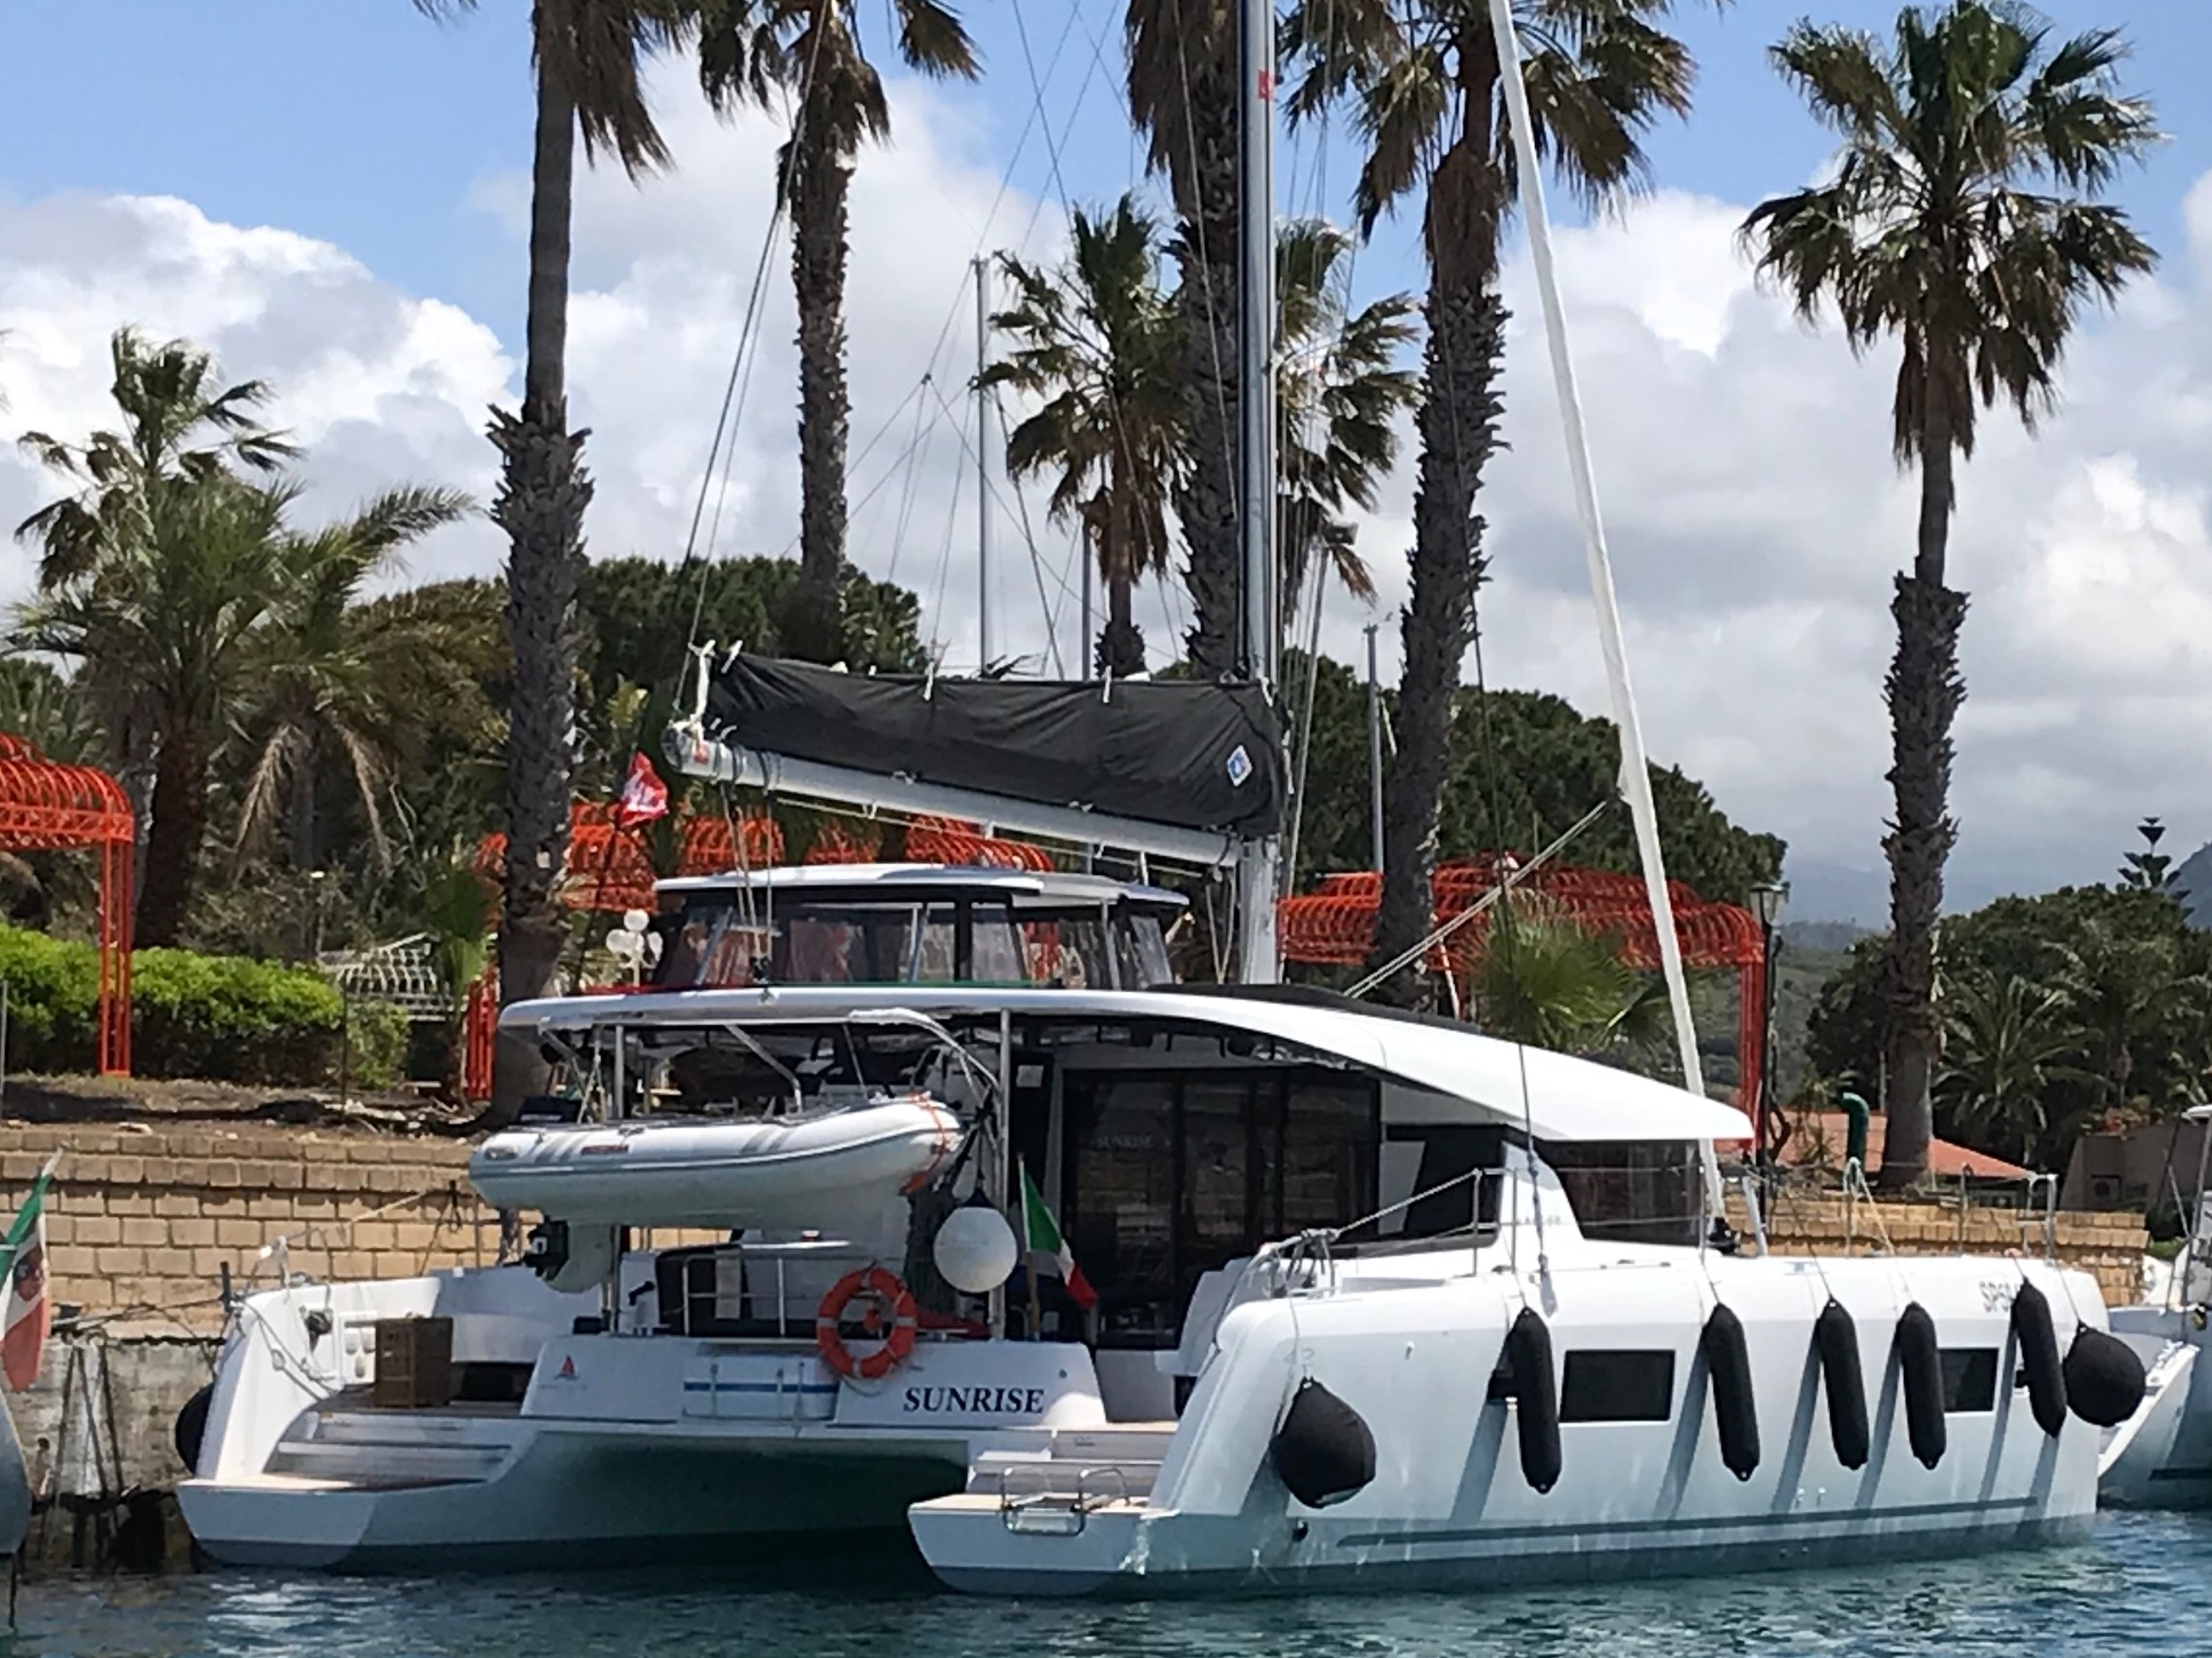 Lagoon 42 - Yacht Charter Capo d'Orlando & Boat hire in Italy Sicily Aeolian Islands Capo d'Orlando Capo d'Orlando Marina 1